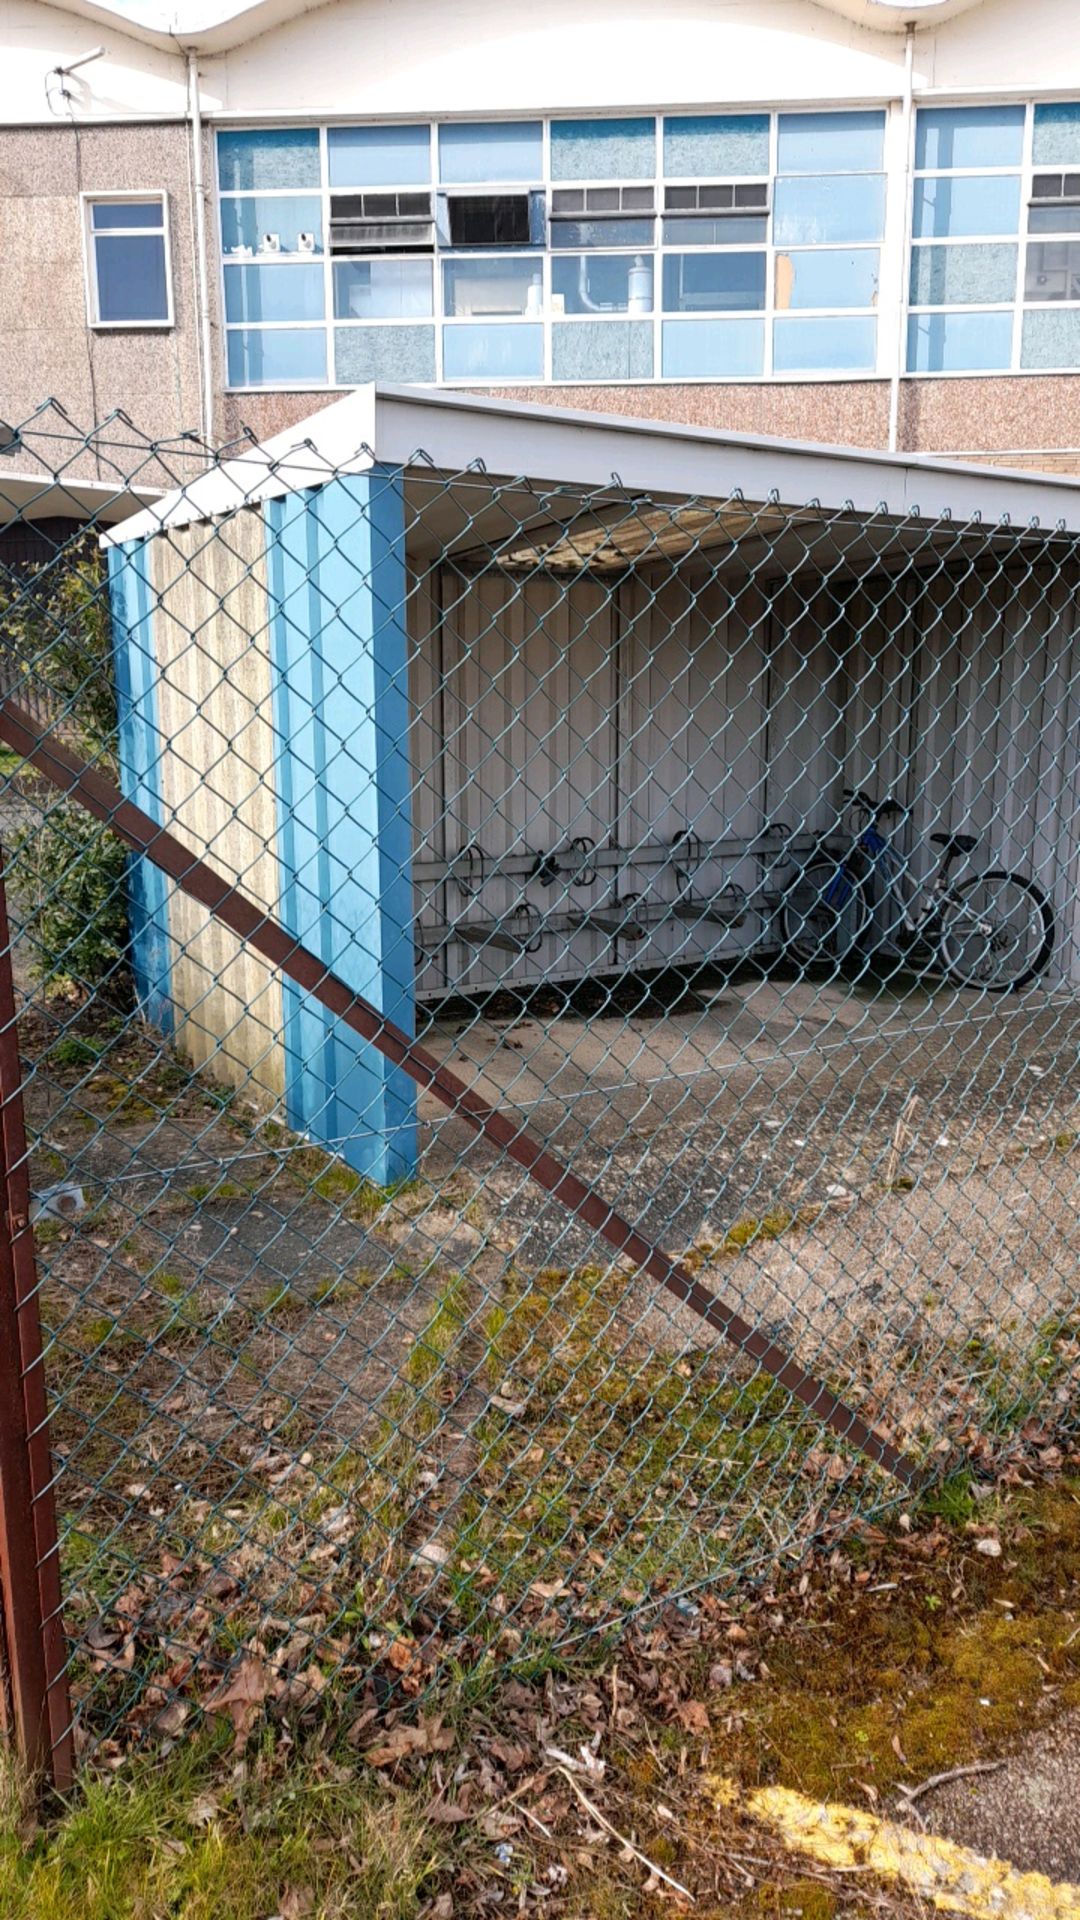 Bike shed shelter - Image 2 of 9